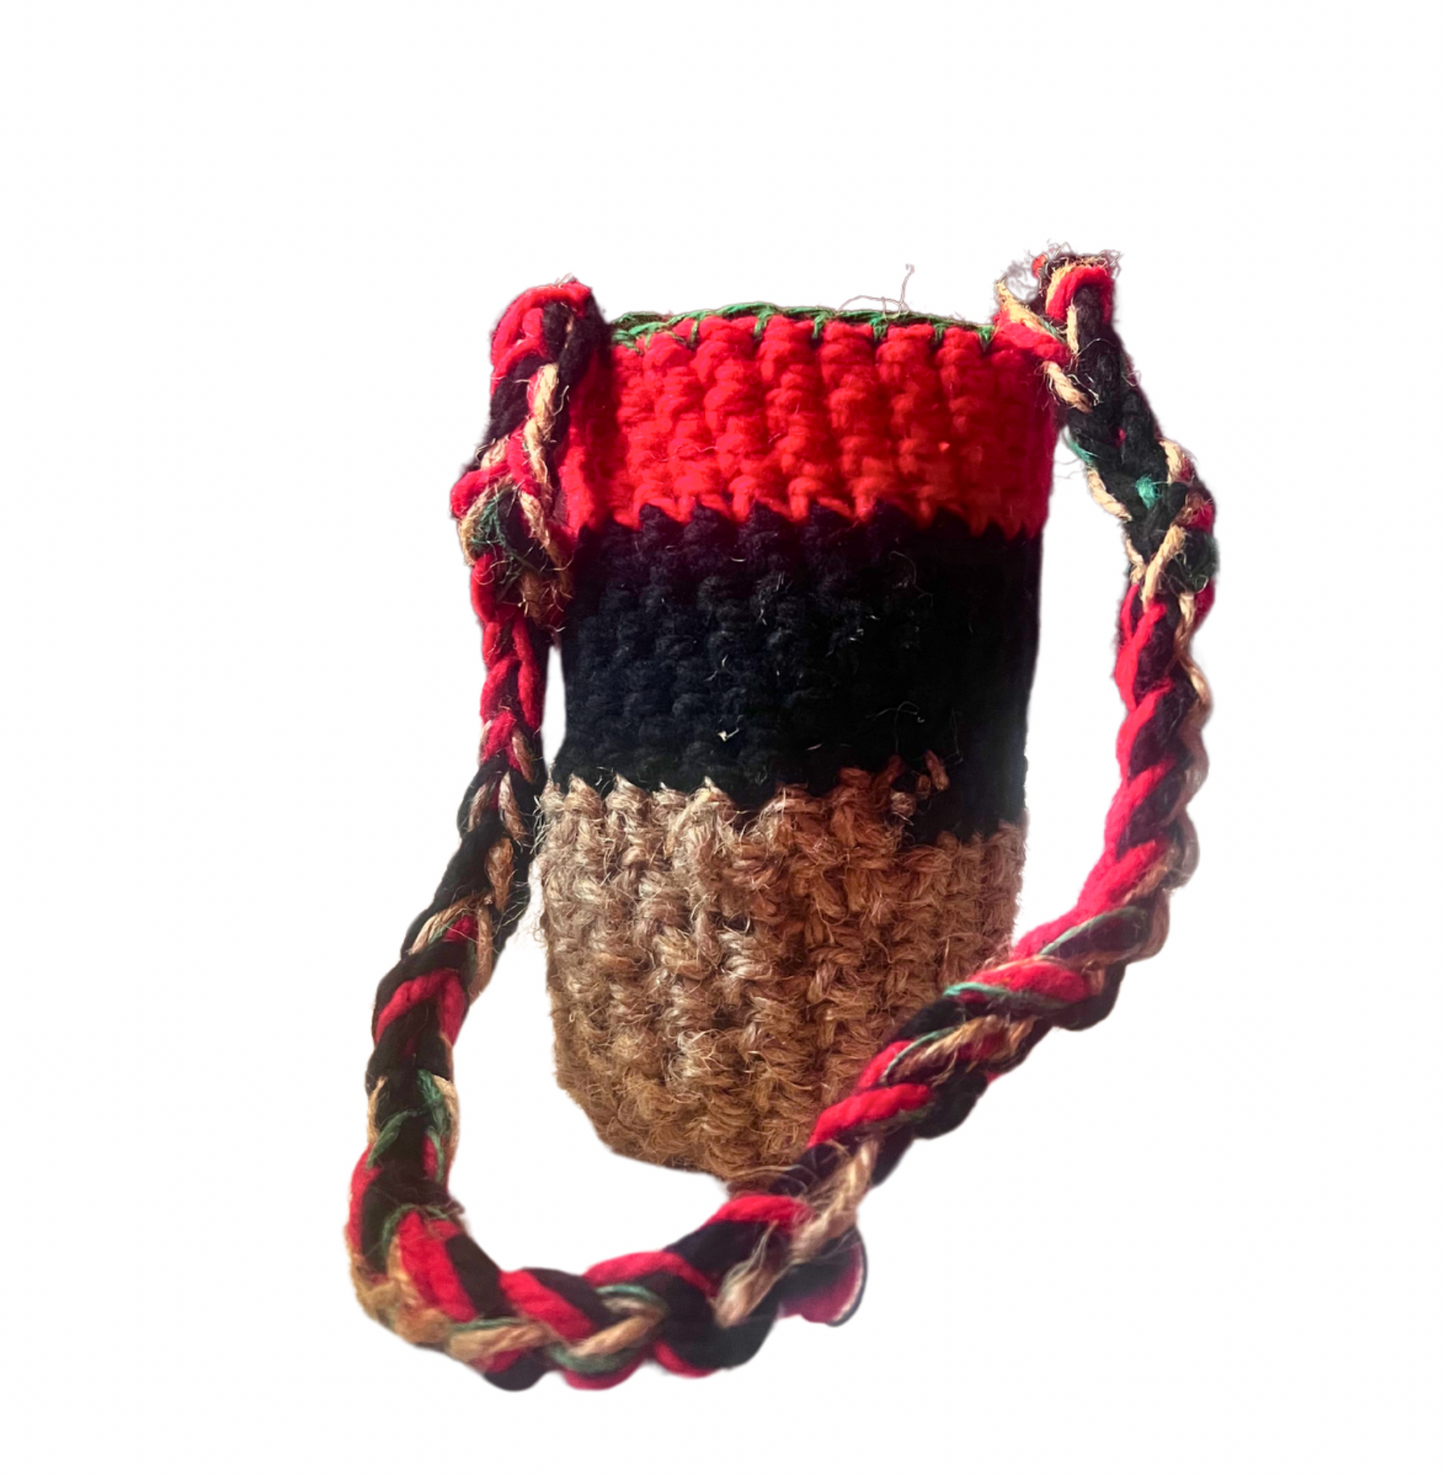 Crochet Boho Bag